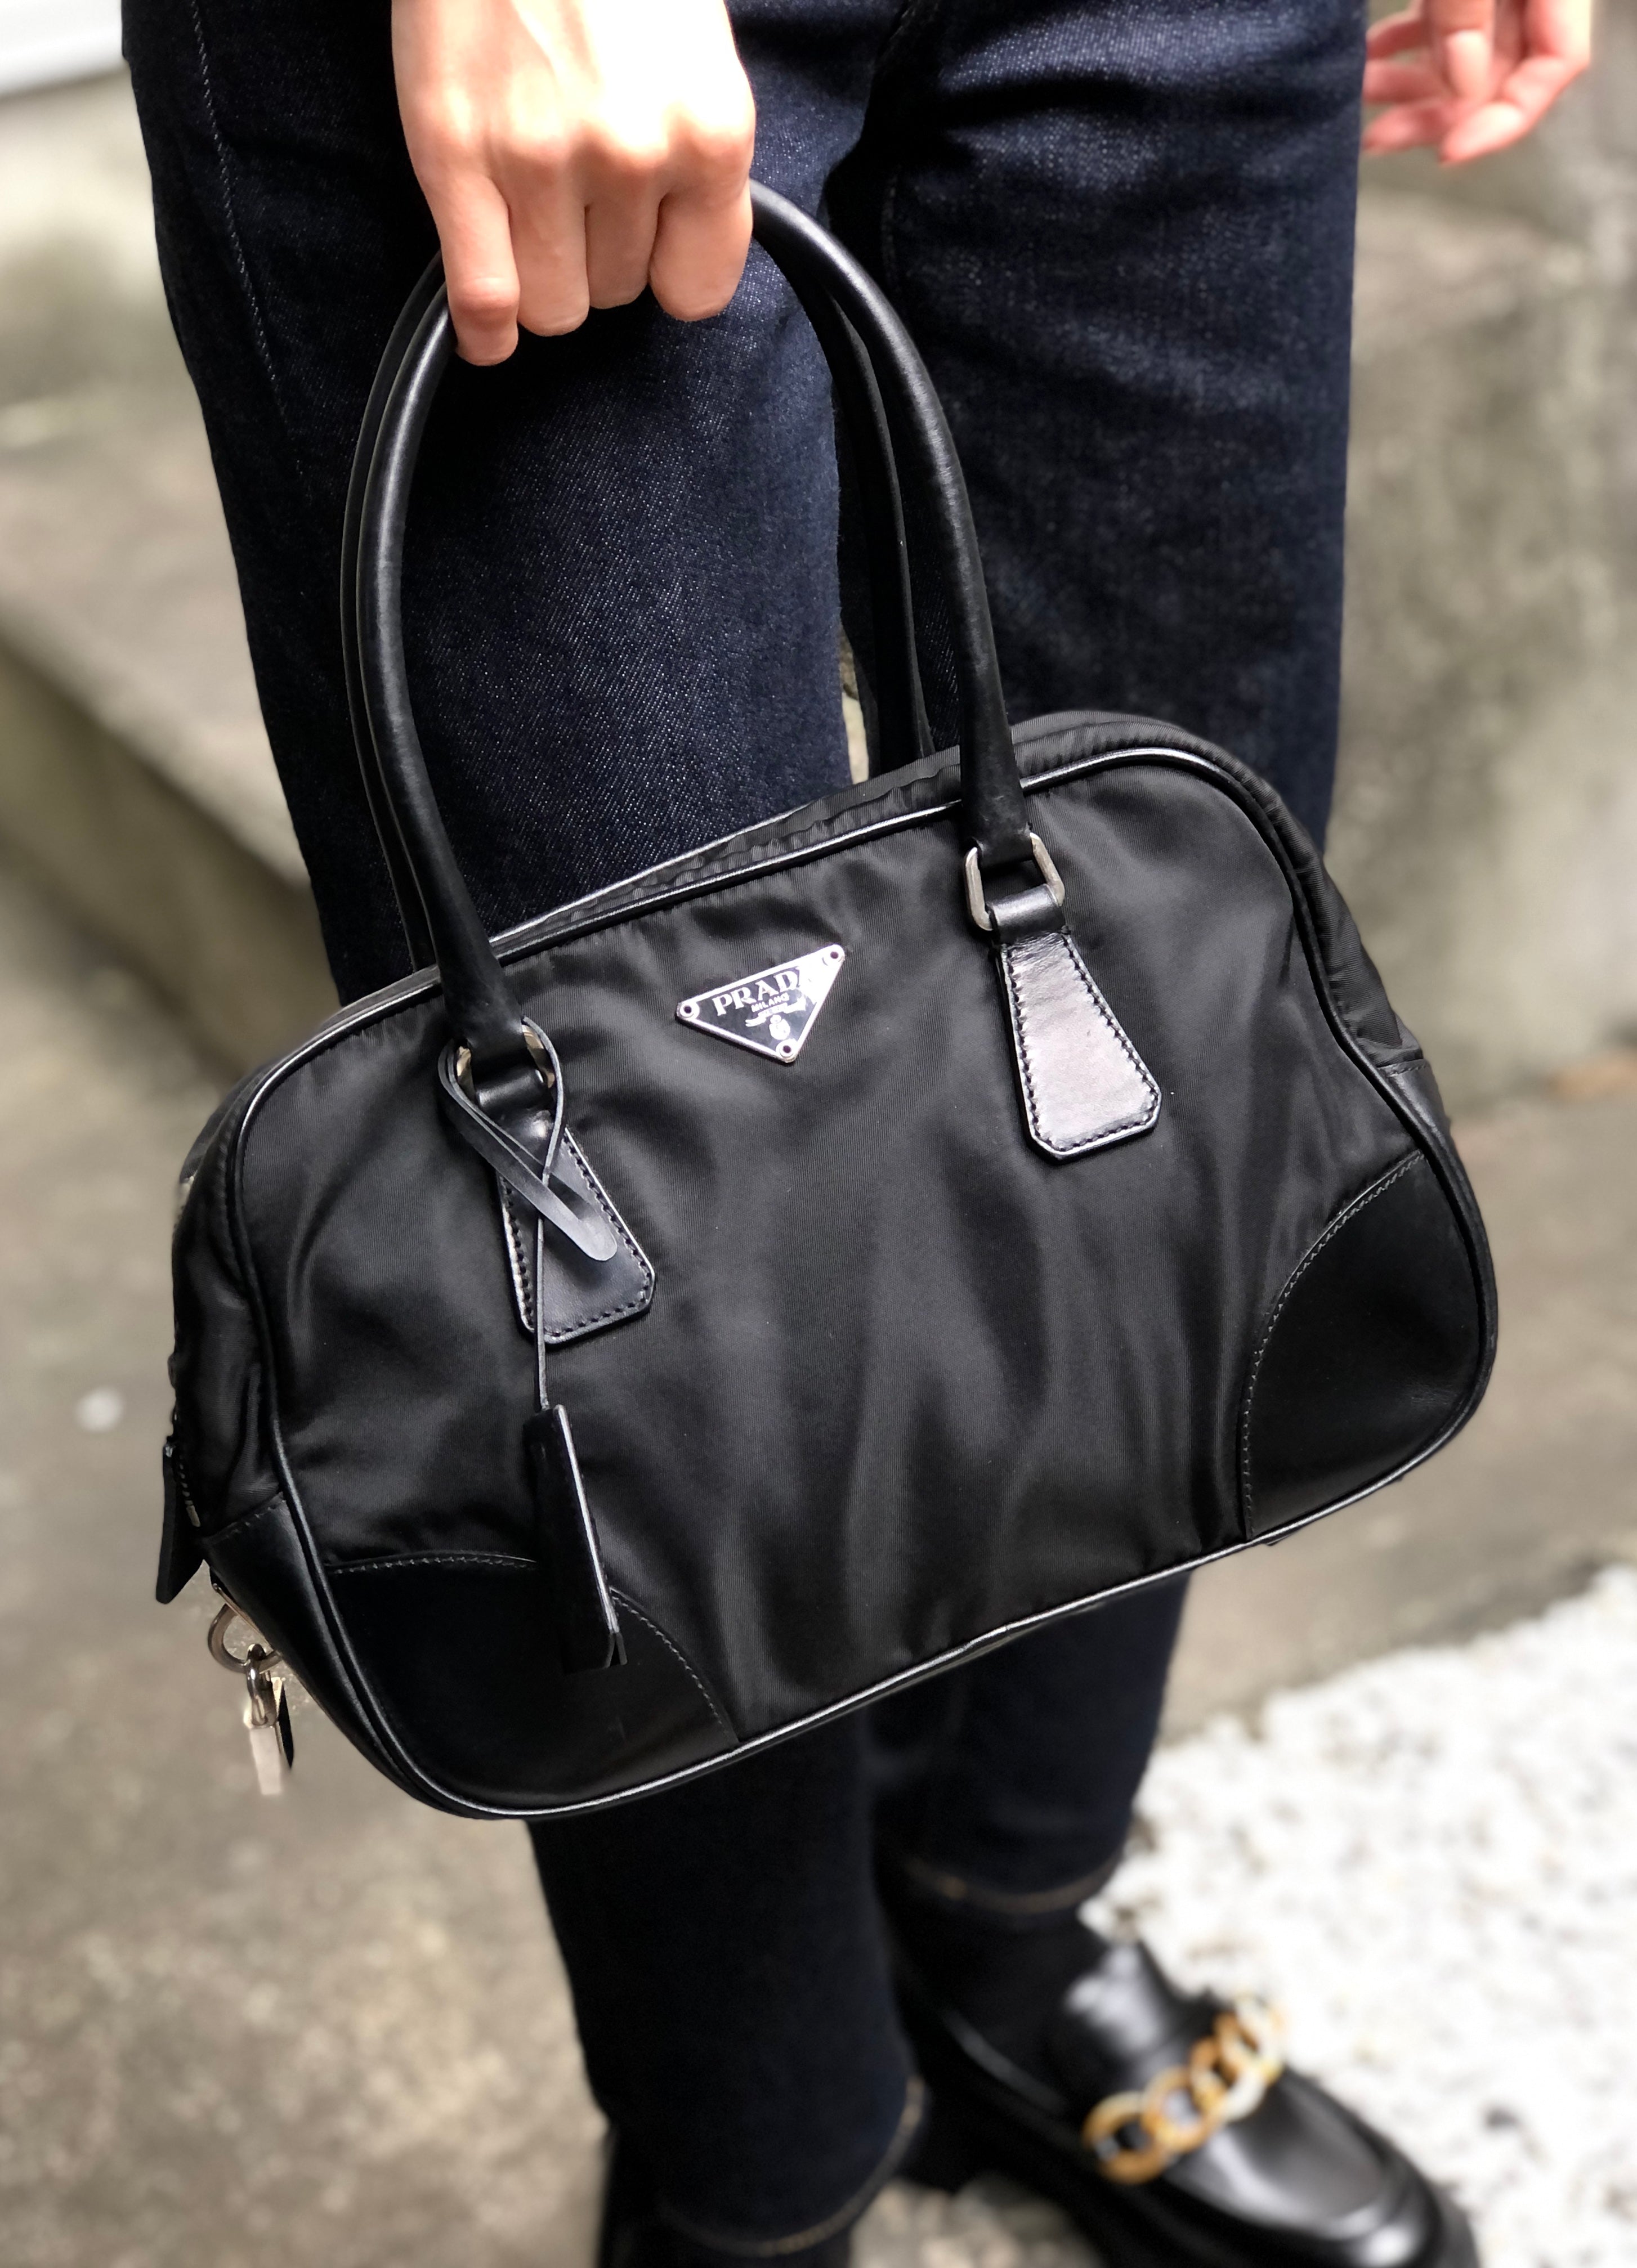 Prada, Bags, Prada Saffiano Leather Gray Bowler Bag